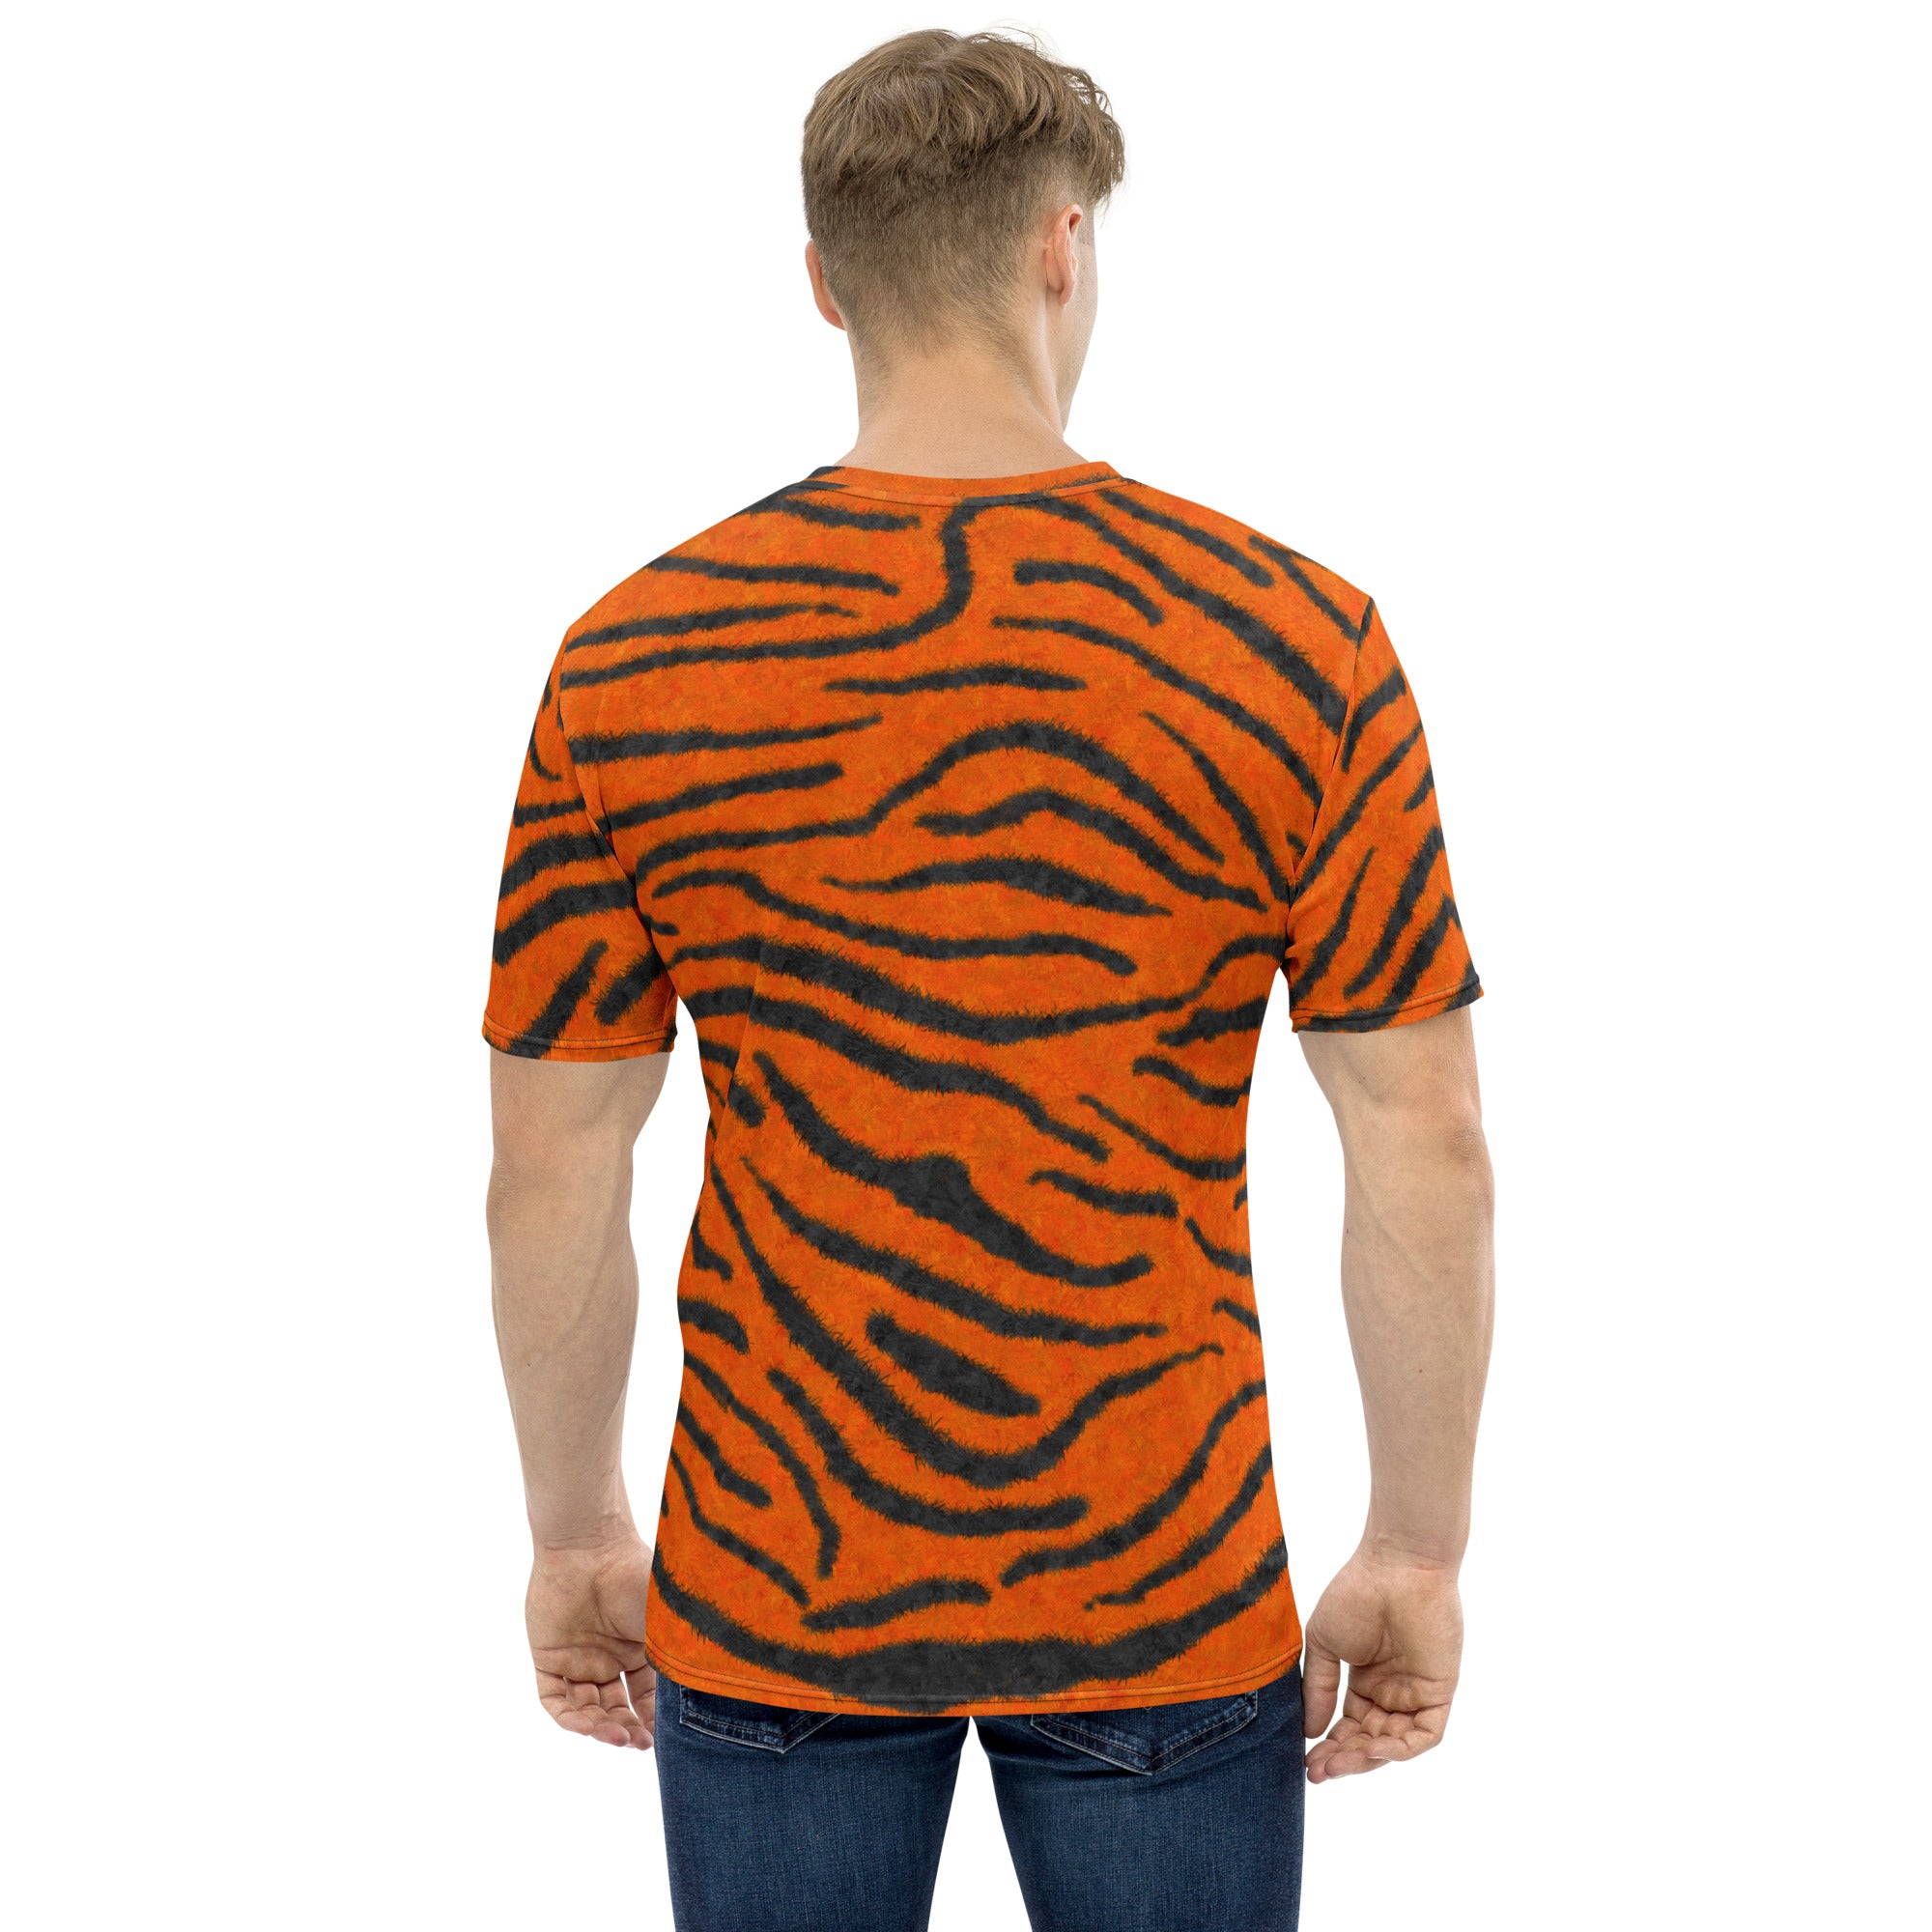 Fuzzy Tiger Stripe Print T-shirt